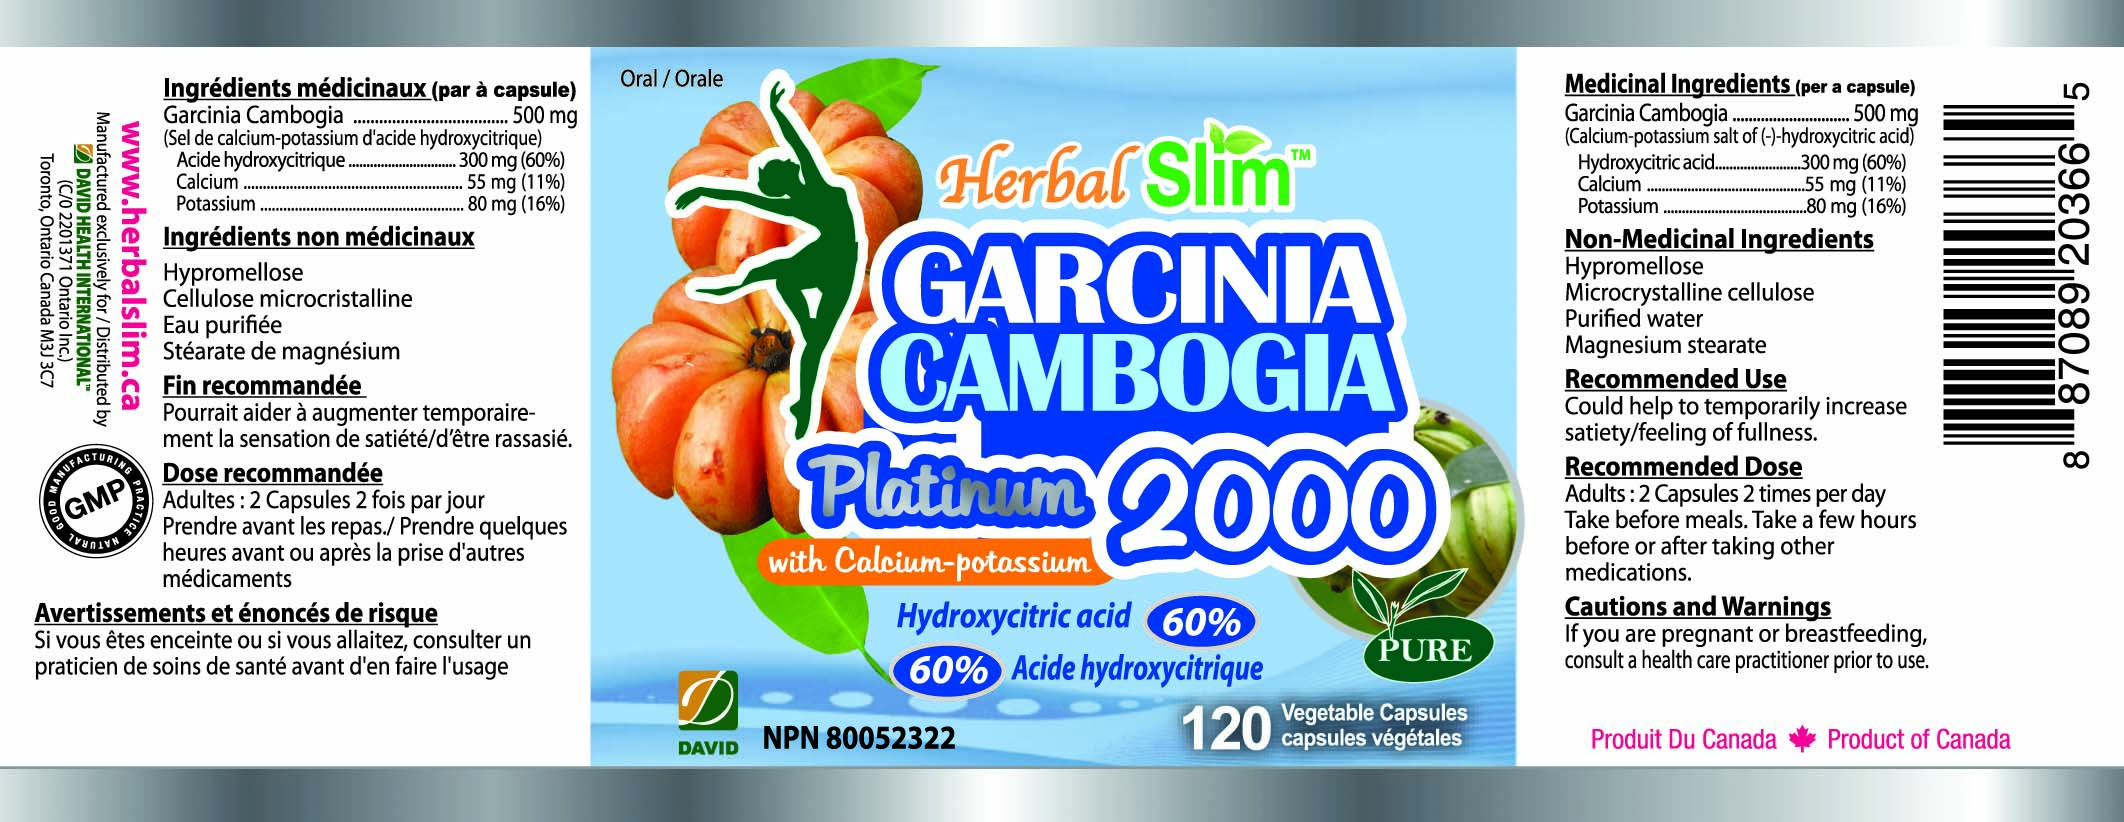 HerbalSlim GARCINIA CAMBOGIA PLATINUM 2000